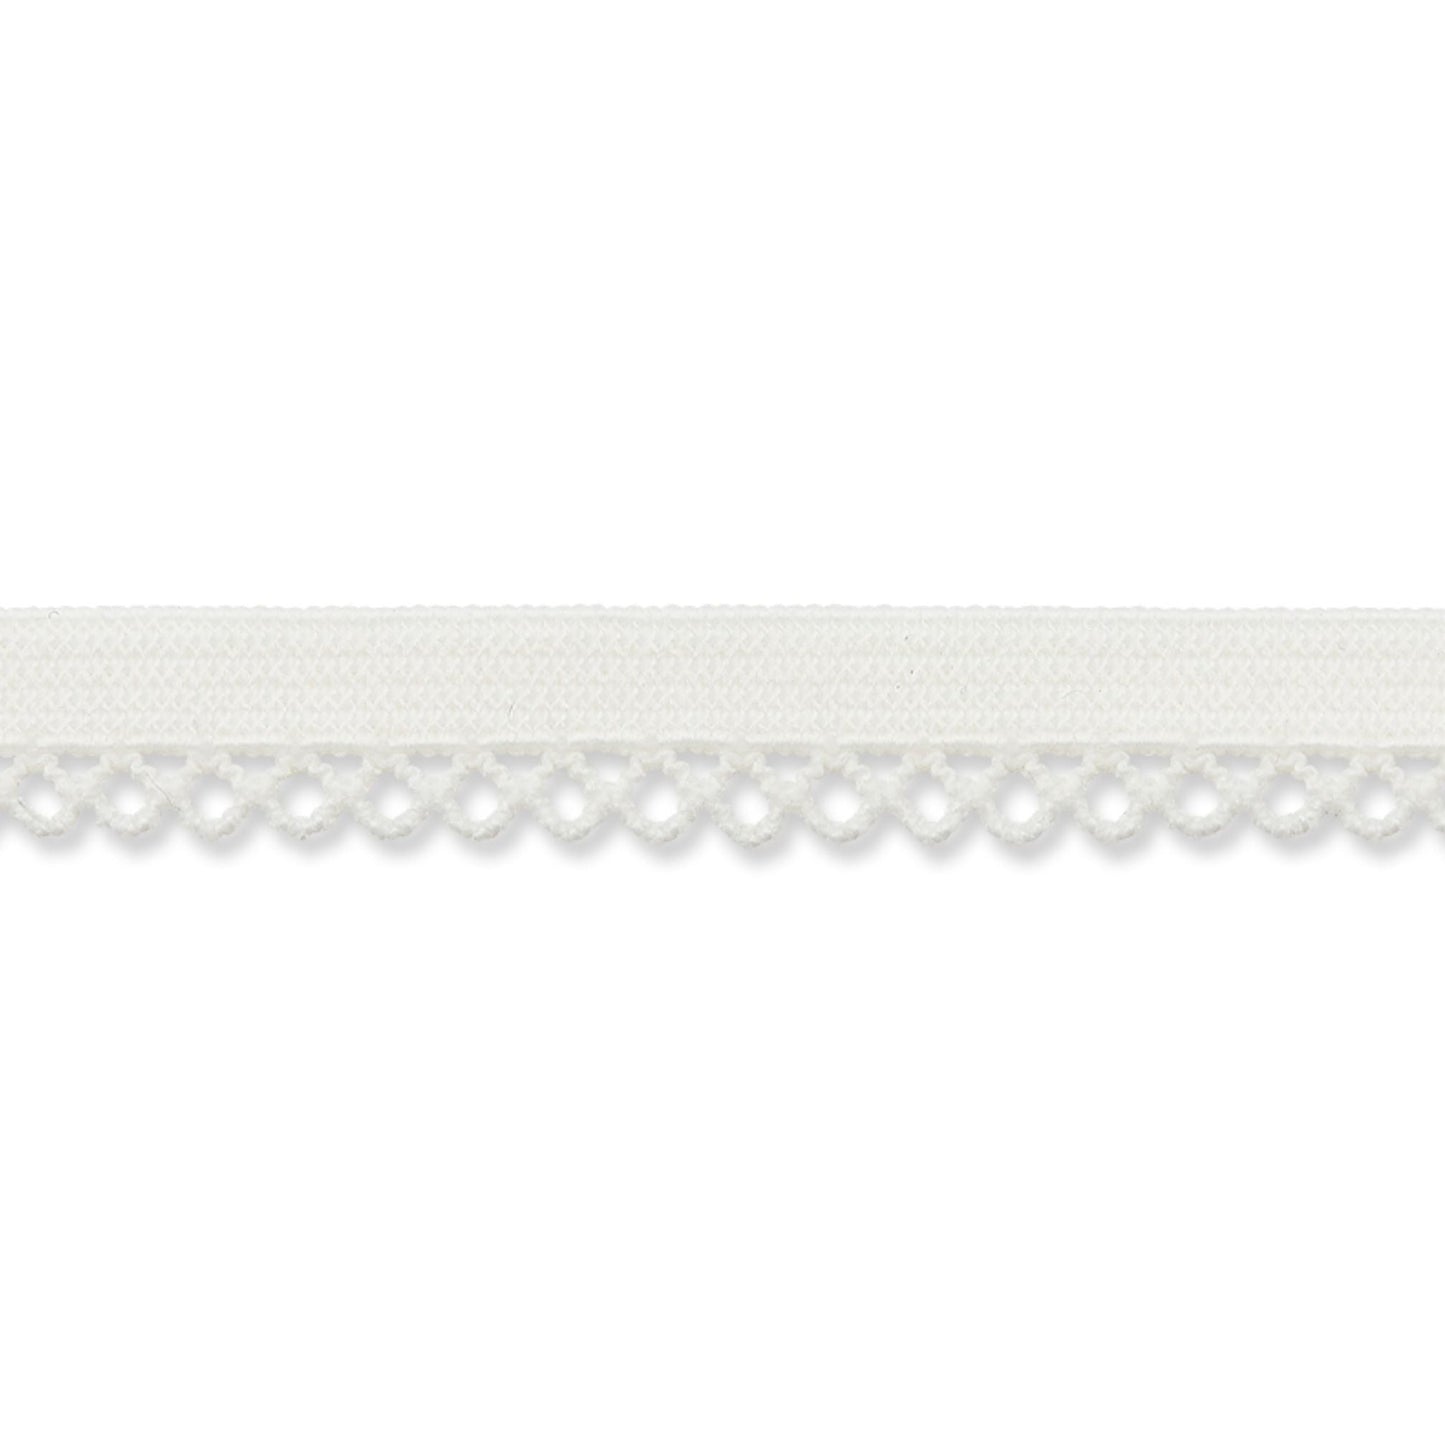 9 mm Ziergummi mit Spitze weiß